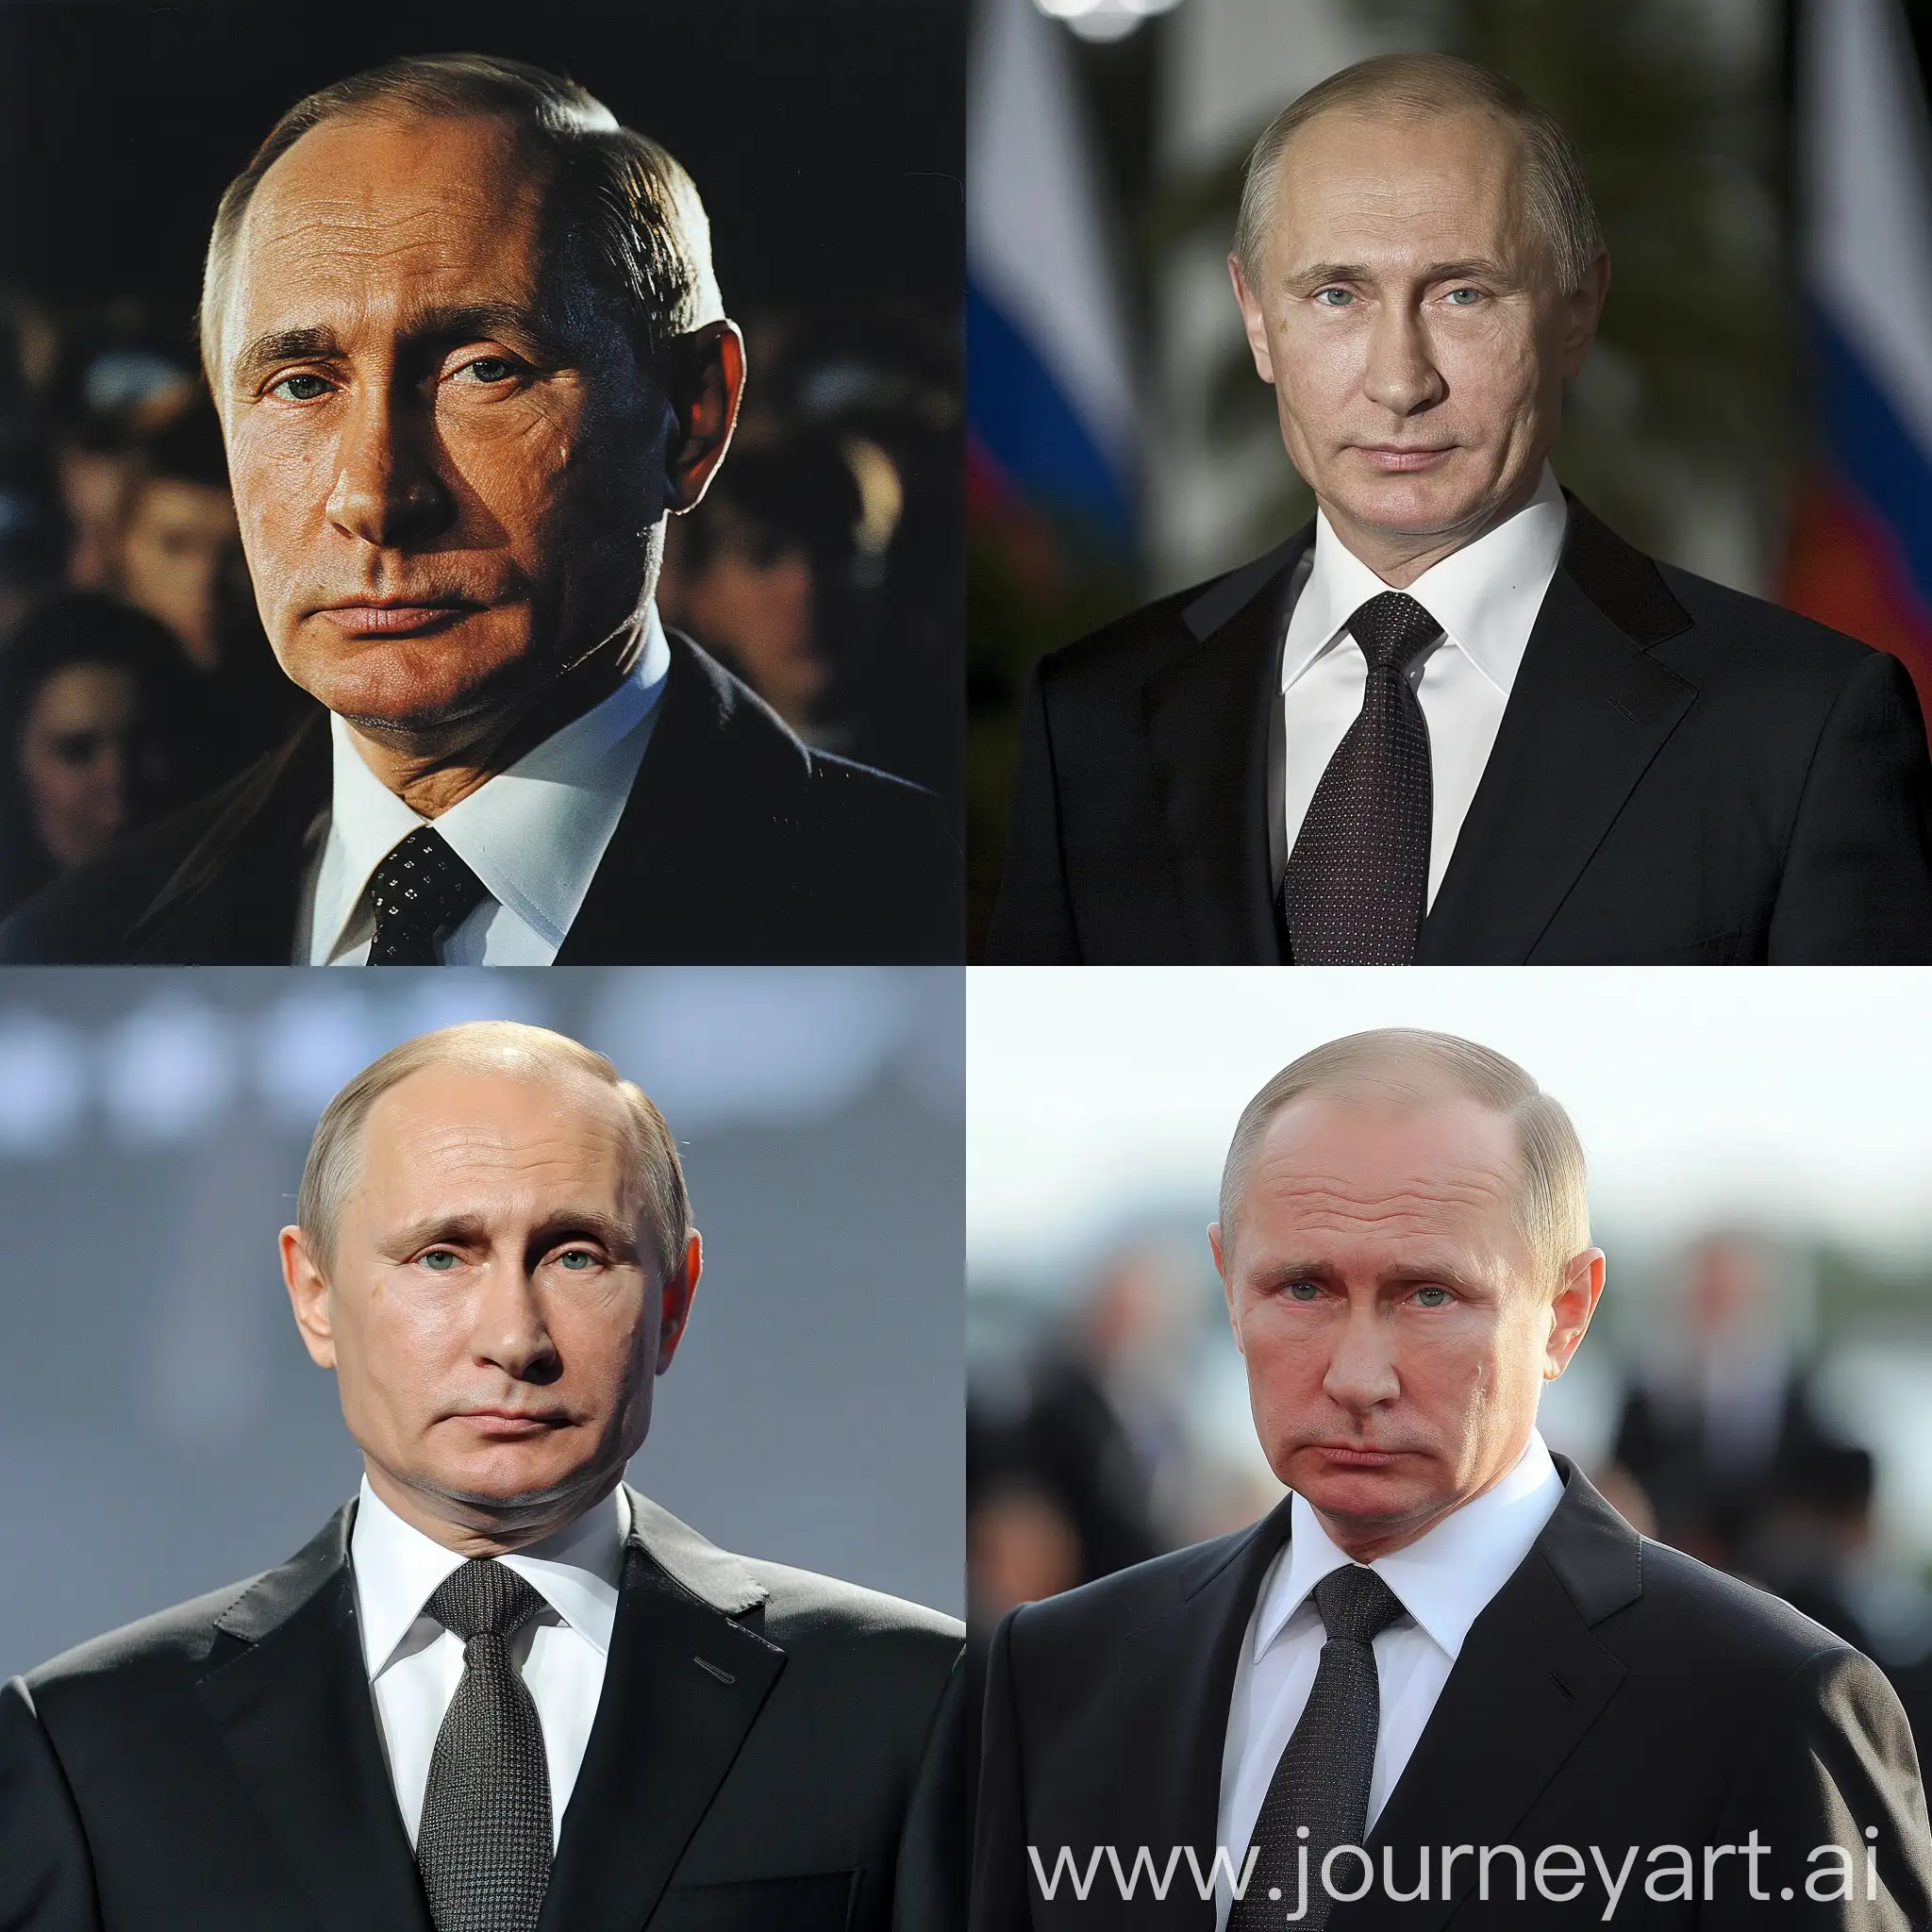 Vladimir-Putin-Portrait-with-Symmetrical-Composition